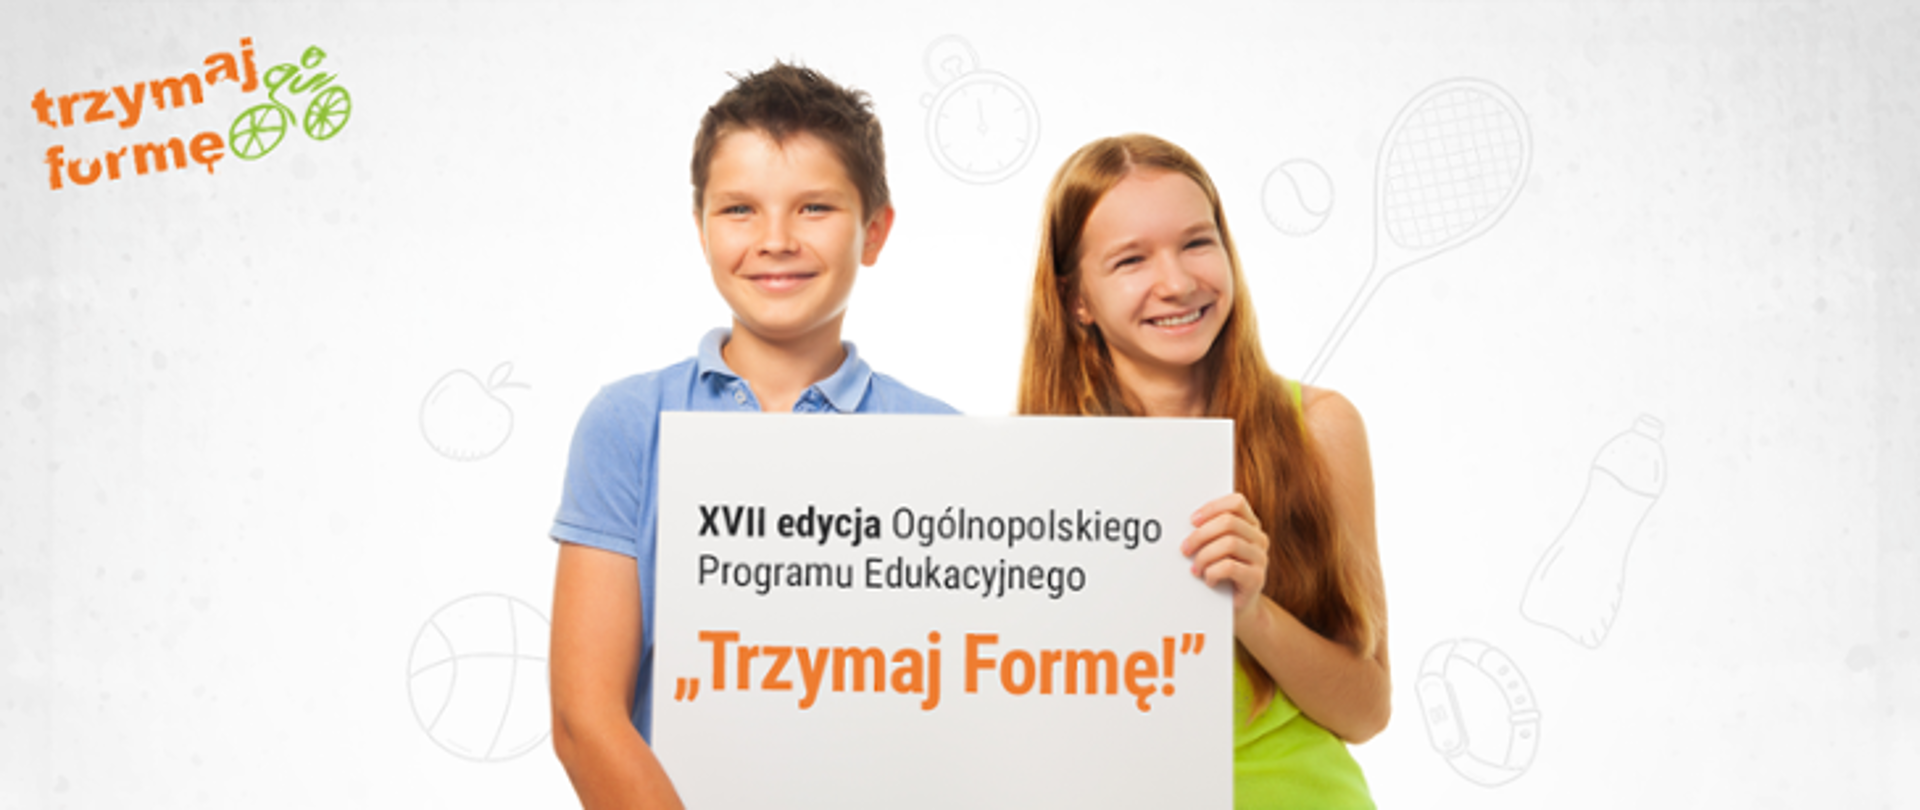 Dwoje uśmiechniętych dzieci trzyma kartkę z napisem XVII edycja Ogólnopolskiego Programu Edukacyjnego "Trzymaj Formę!"